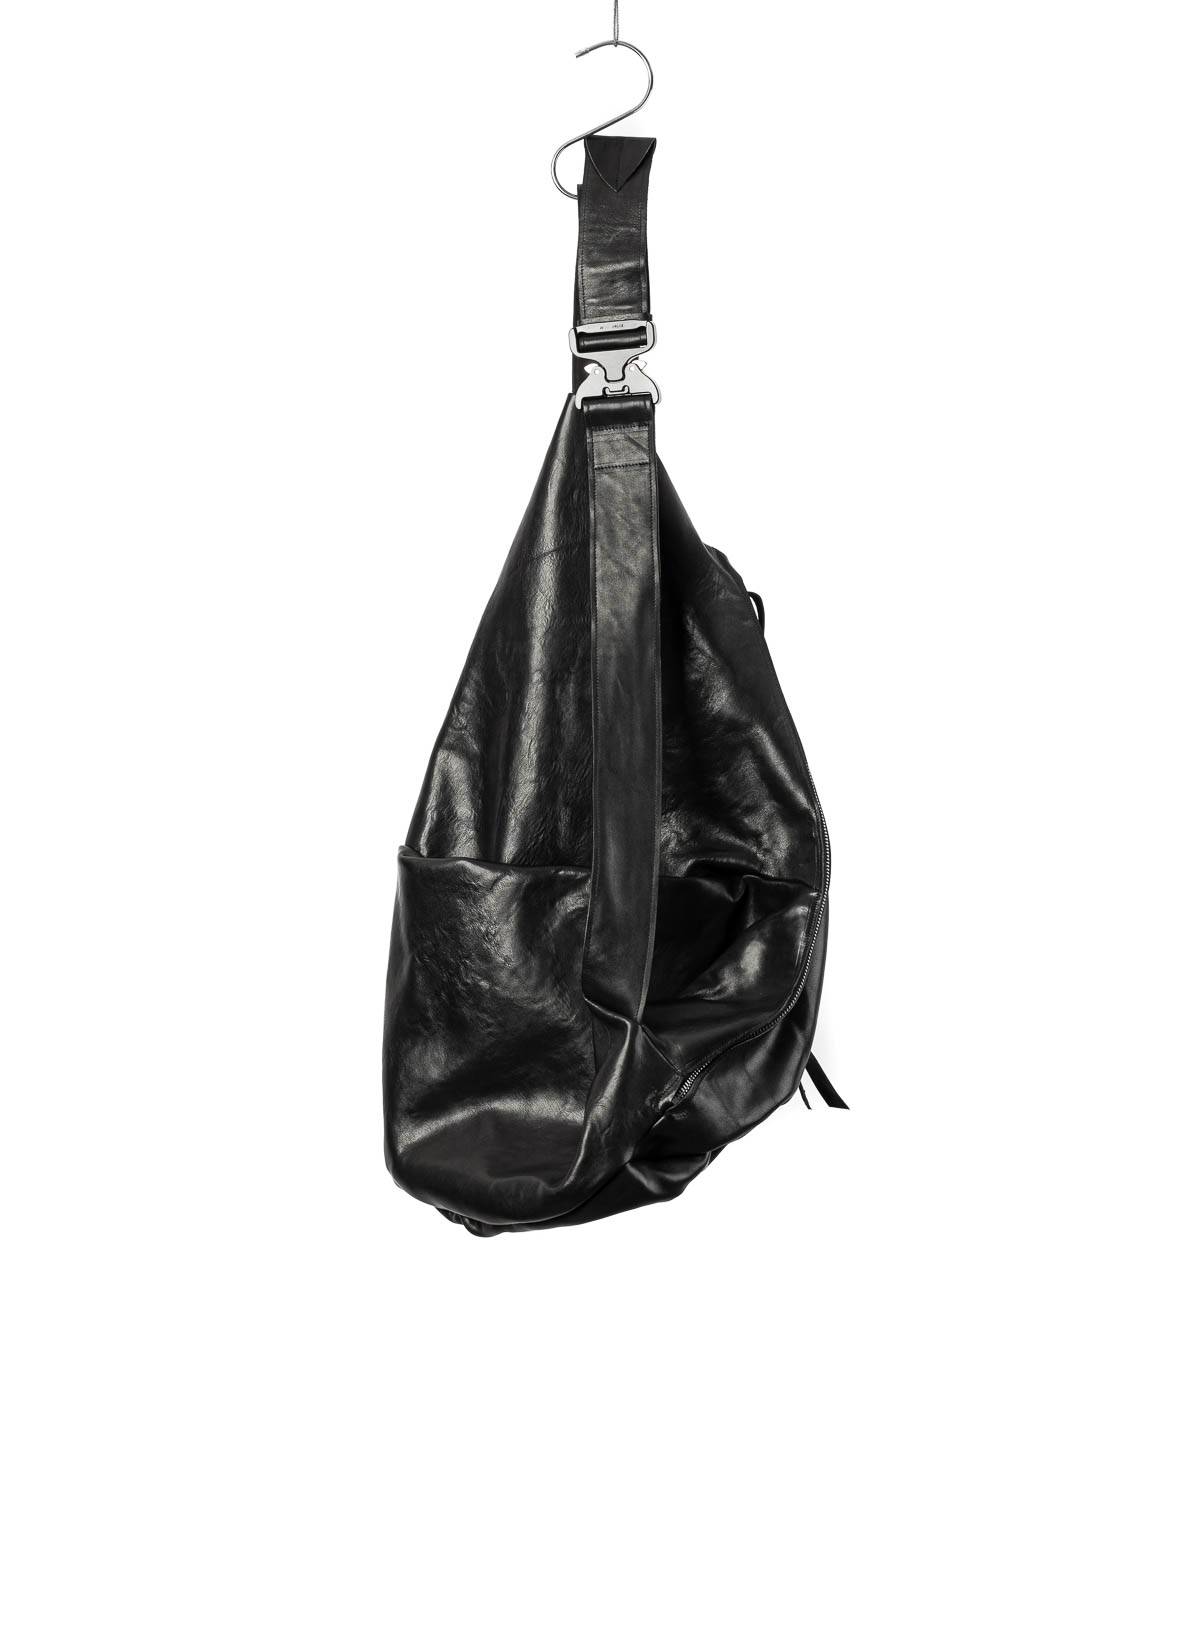 hide-m | LEON XL, black Bag BLANCK Dealer horse EMANUEL leather